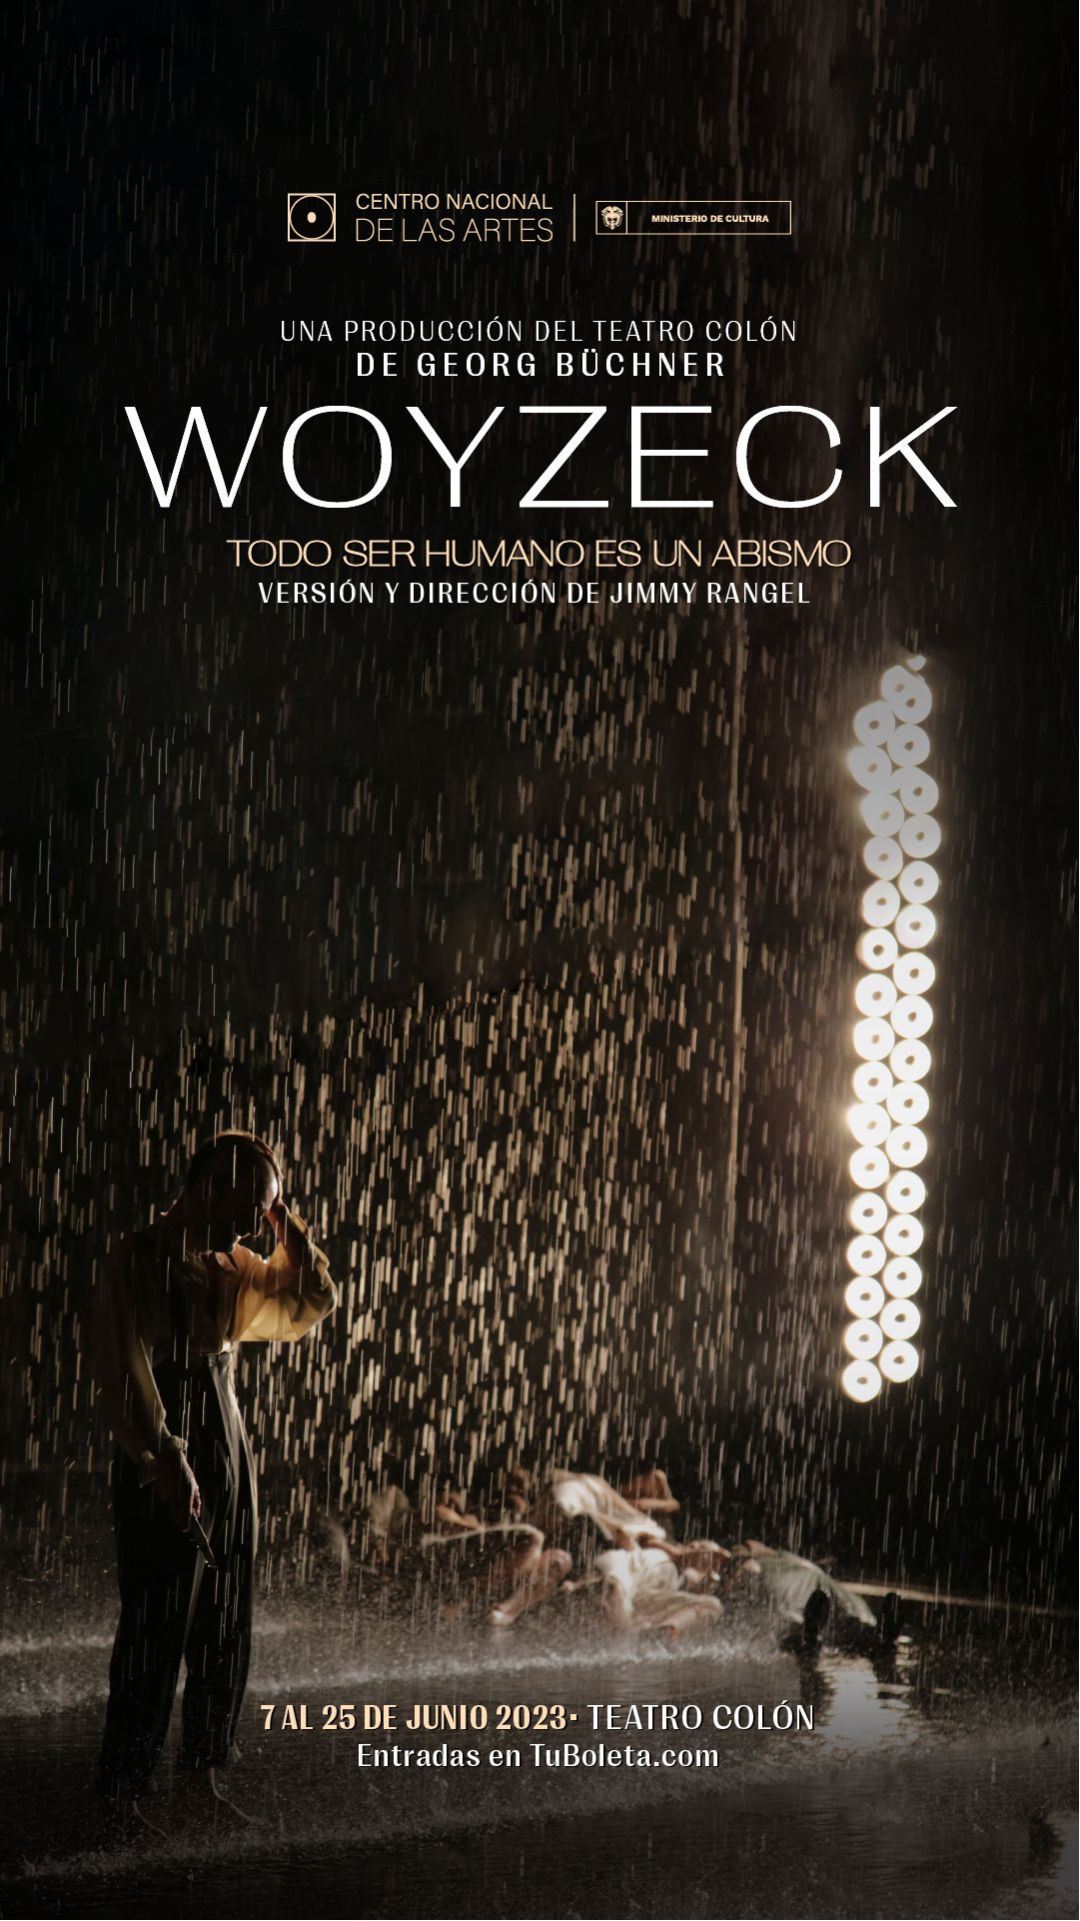 Artista en escena- Obra propia del Teatro colón Woyzeck